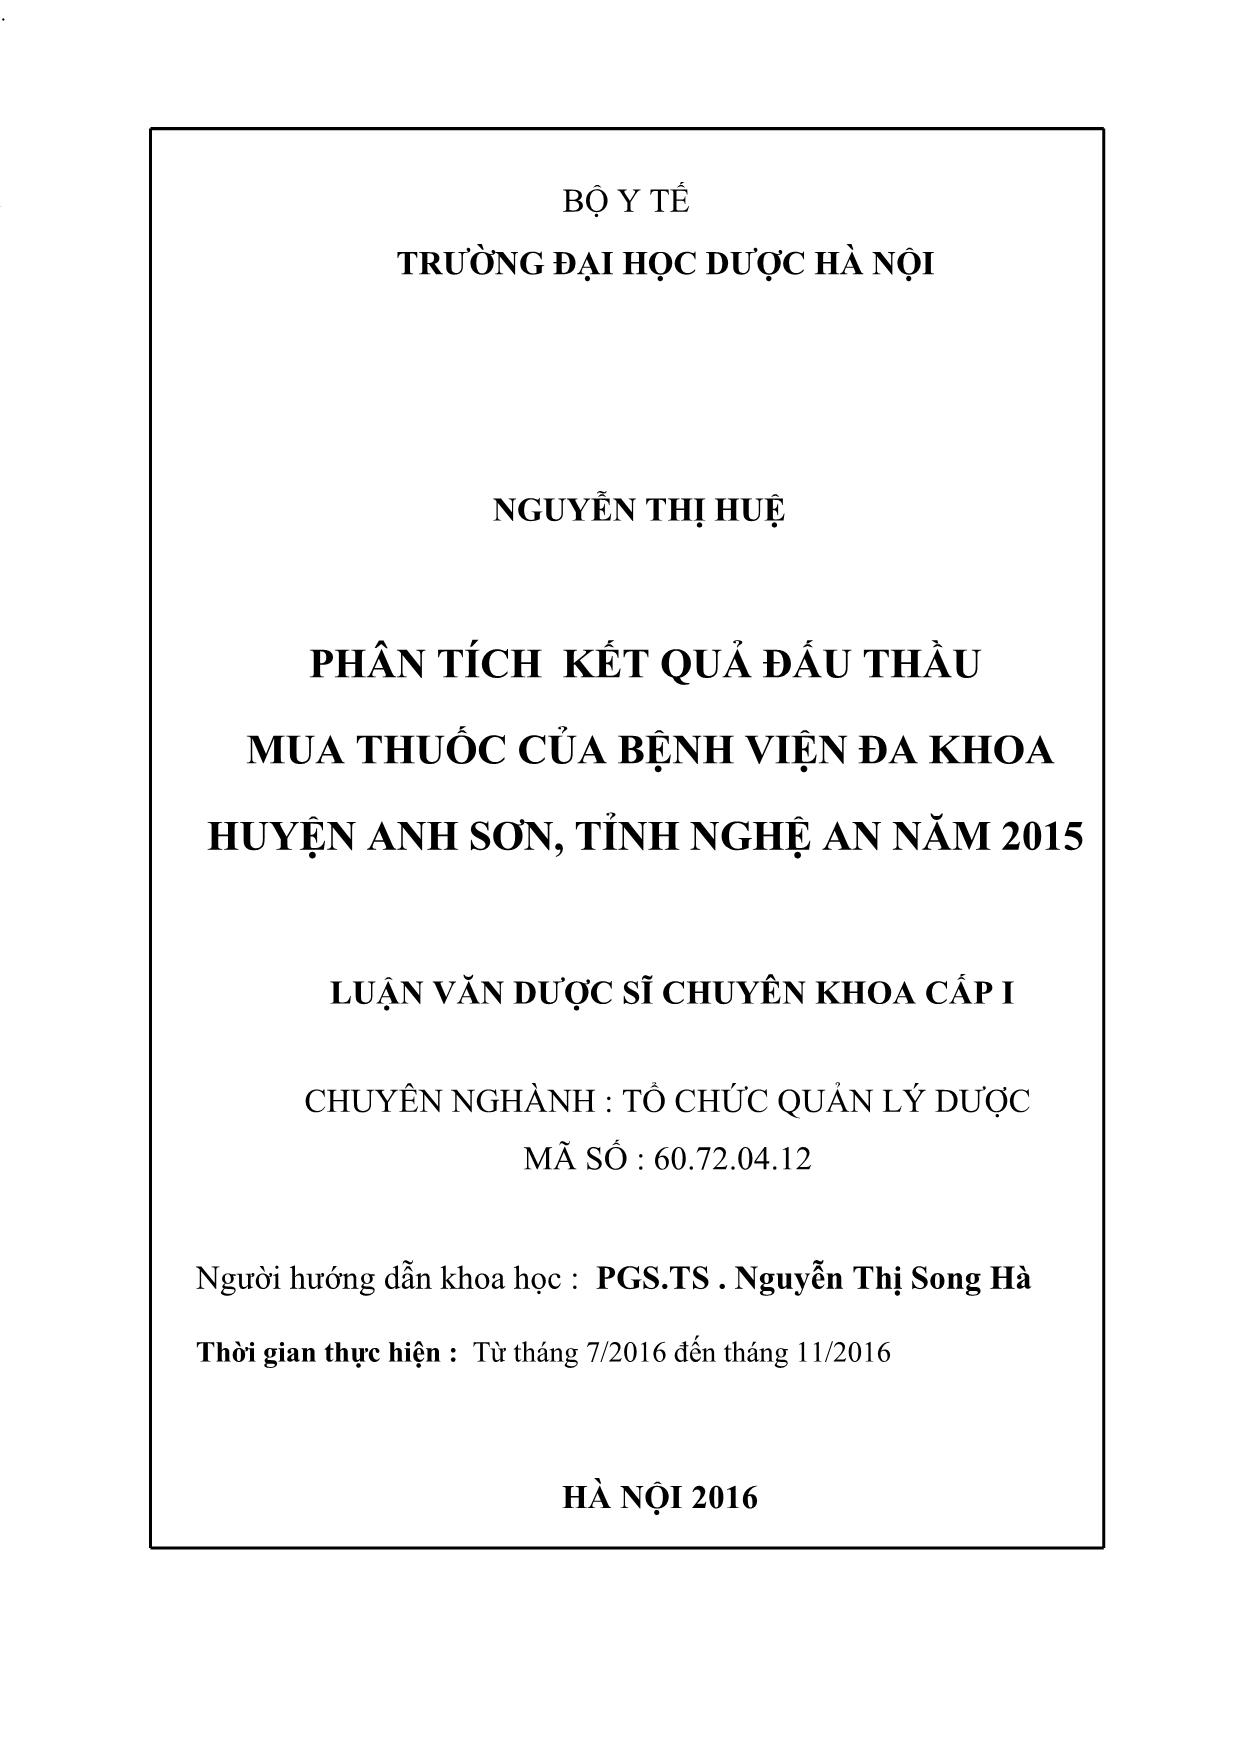 Luận văn Phân tích kết quả đấu thầu mua thuốc của bệnh viện đa khoa huyện Anh sơn, tỉnh Nghệ an năm 2015 trang 2